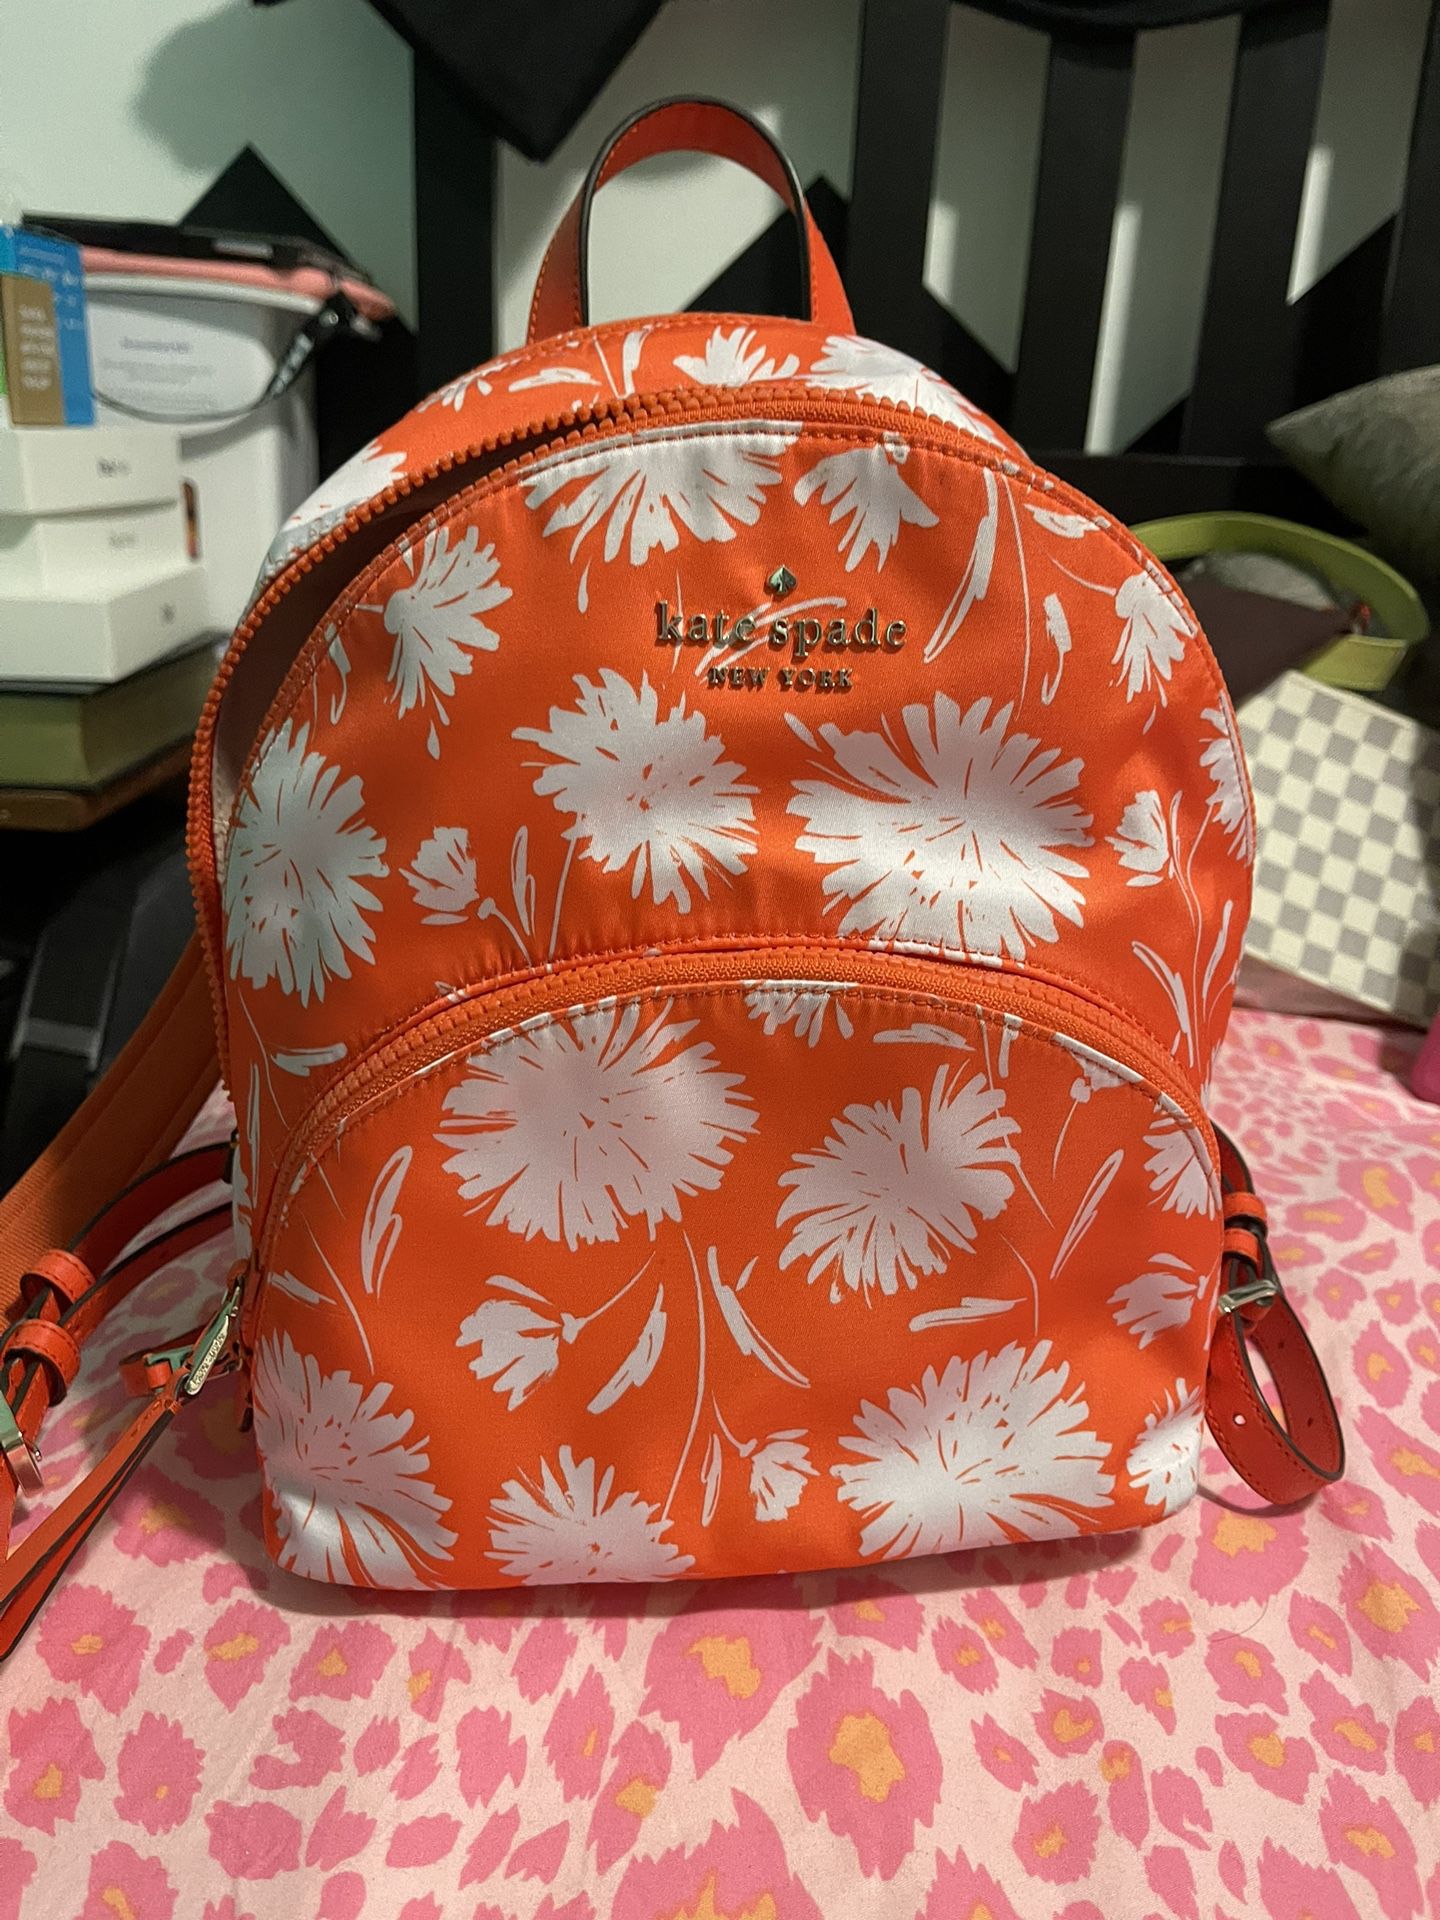 Katy Spade Medium Size, Backpacks for Sale in Auburn, WA - OfferUp